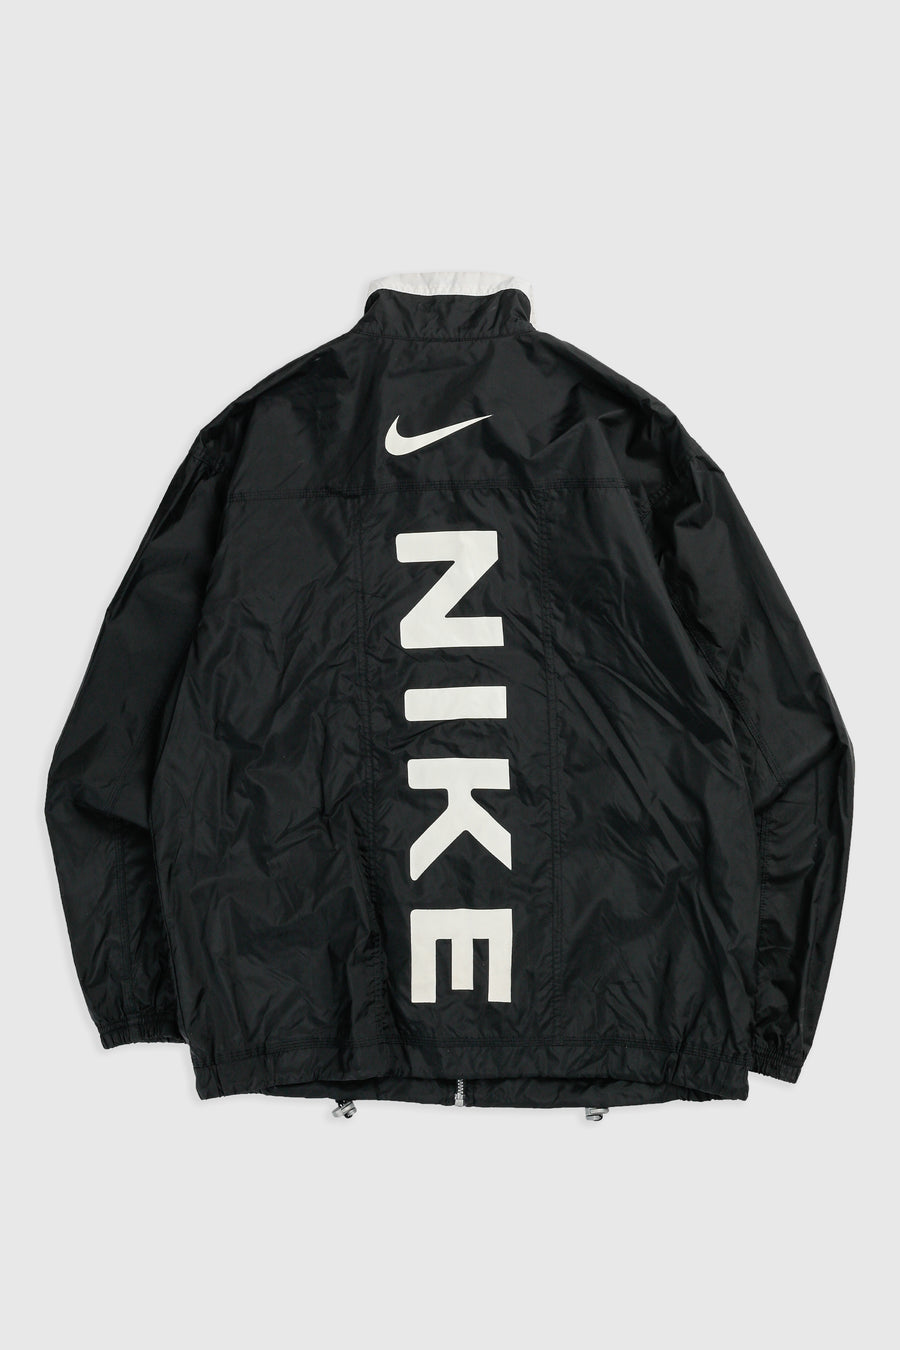 Vintage Nike Windbreaker Jacket - Women's L